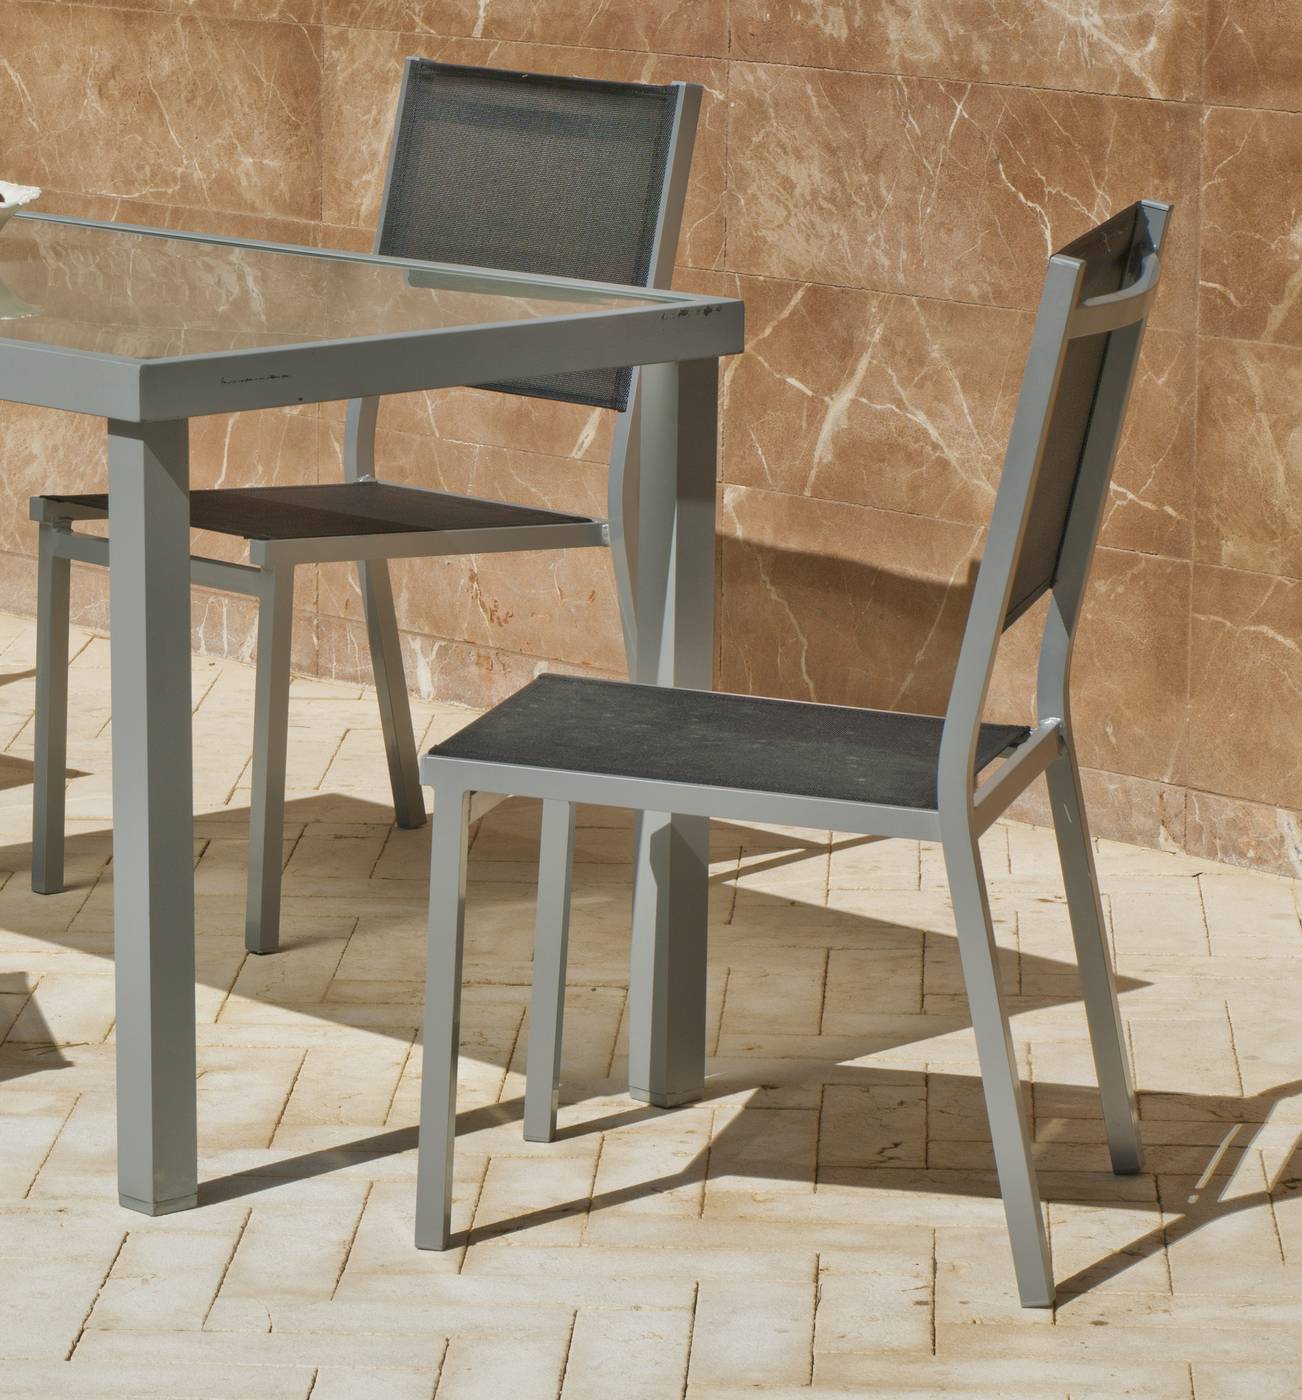 Set Aluminio Denis 707 - Conjunto aluminio color plata: mesa de 70 cm. con tablero poliwood y 4 sillas